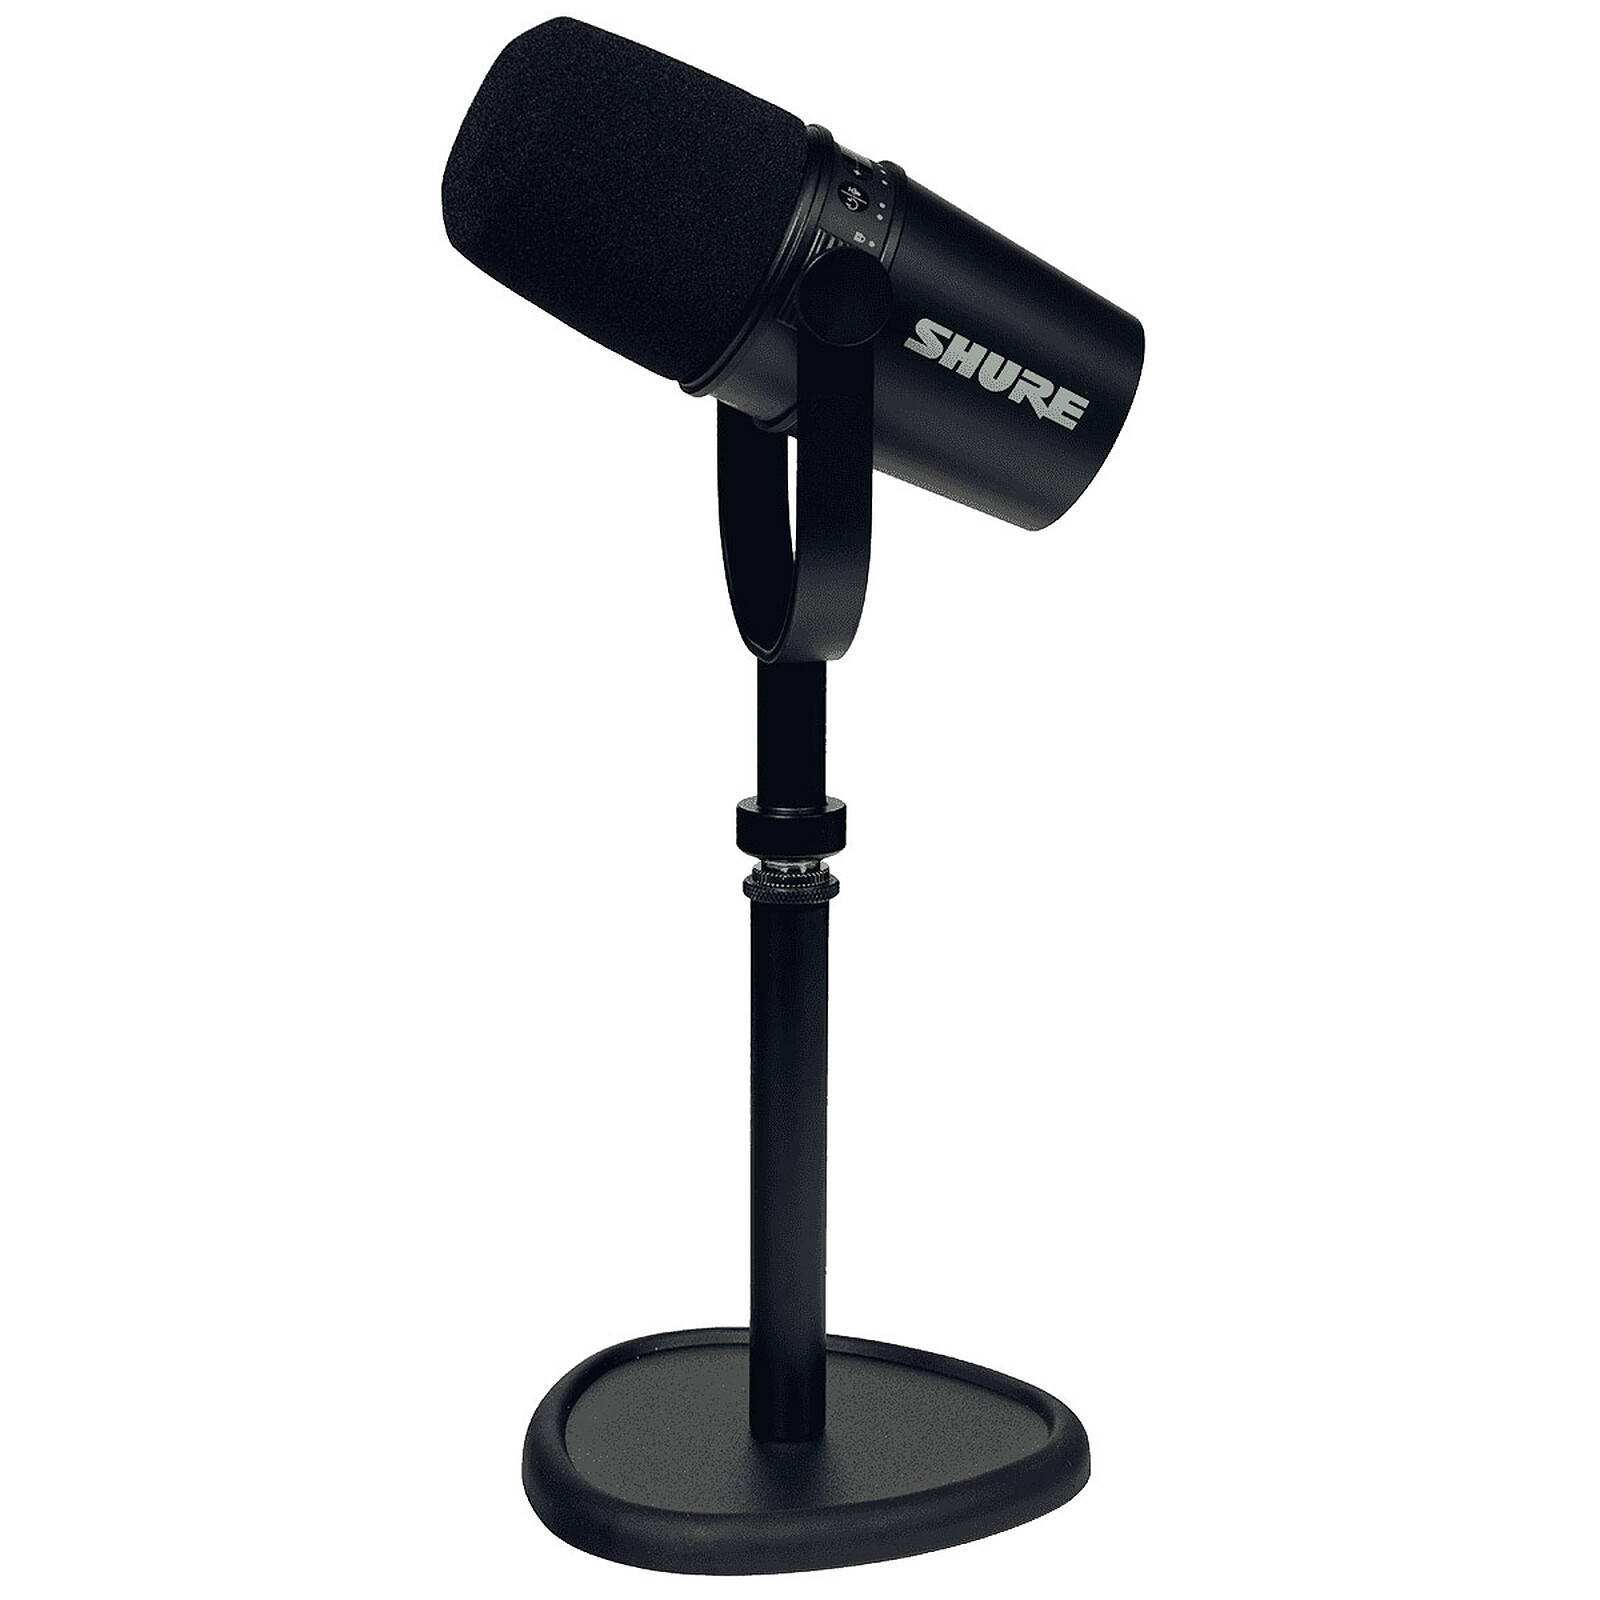 Convertir Adular el último Shure MV7 negro + soporte de mesa - Micrófono SHURE en LDLC | ¡Musericordia!